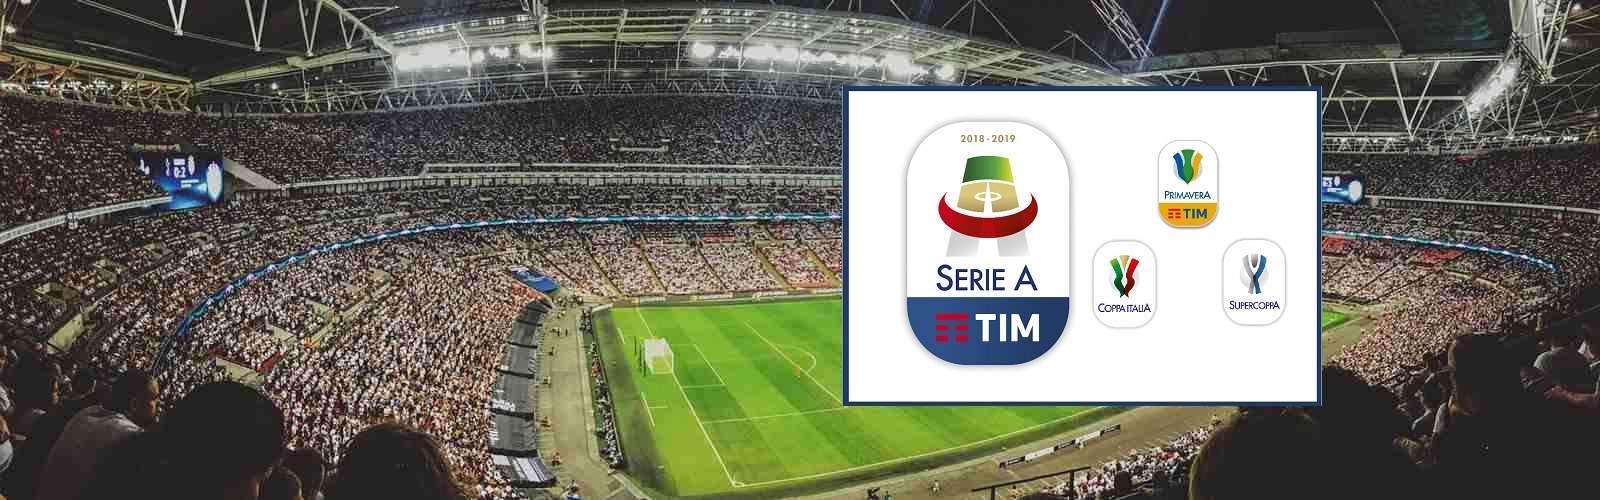 Serie A TIM - il nuovo logo